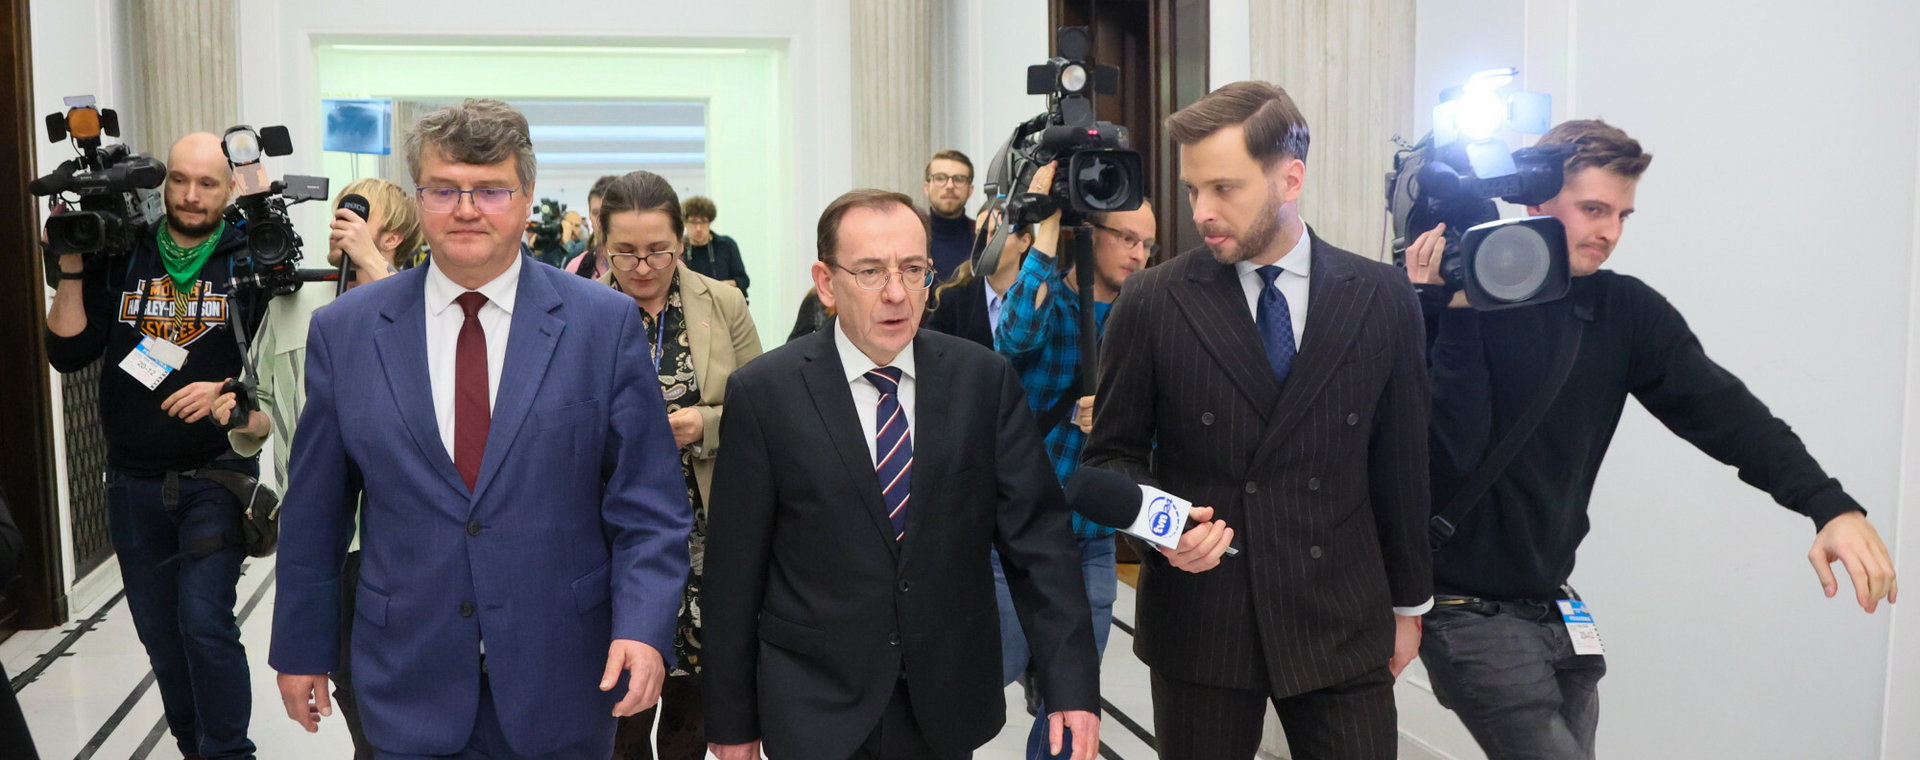 Mariusz  Kamiński i Maciej Wąsik, byli szefowie CBA, na konferencji prasowej po ich prawomocnym skazaniu w aferze gruntowej.